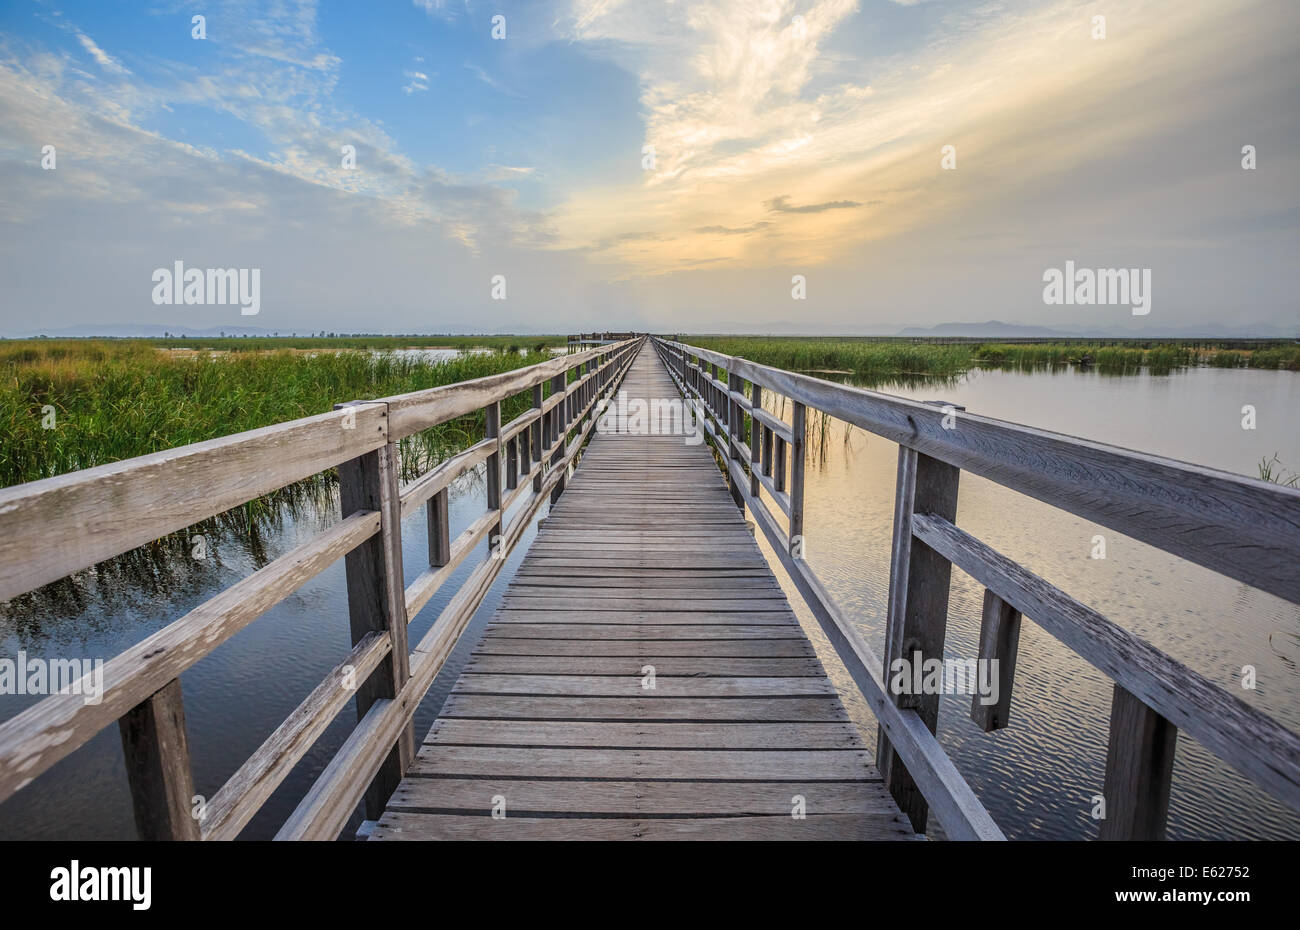 Wetland walkway with sunset sky Stock Photo